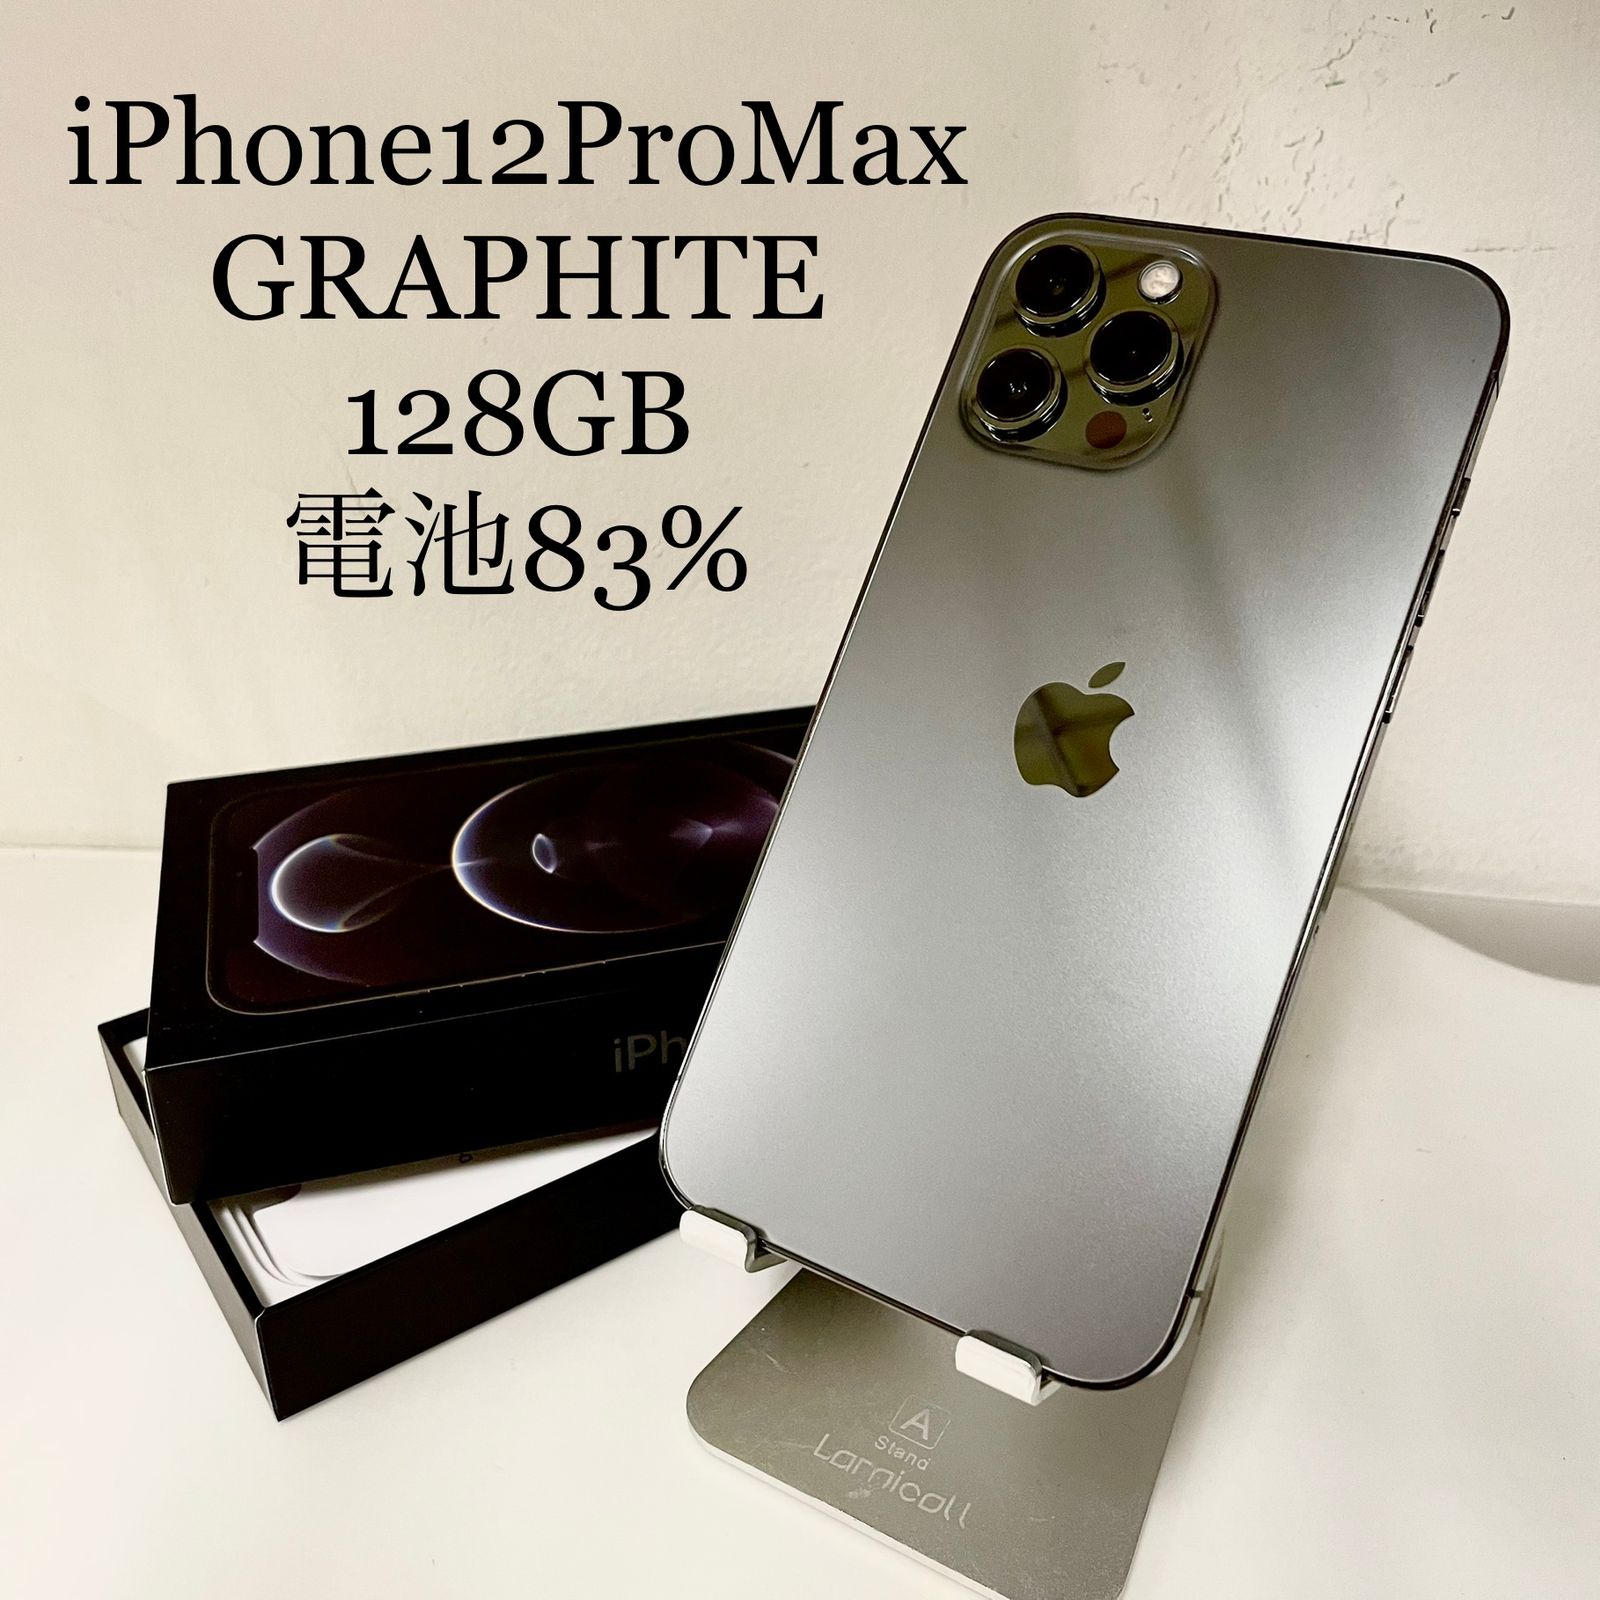 iPhone12 Pro Max グラファイト 128GB 電池残量83% - ネコモバイル